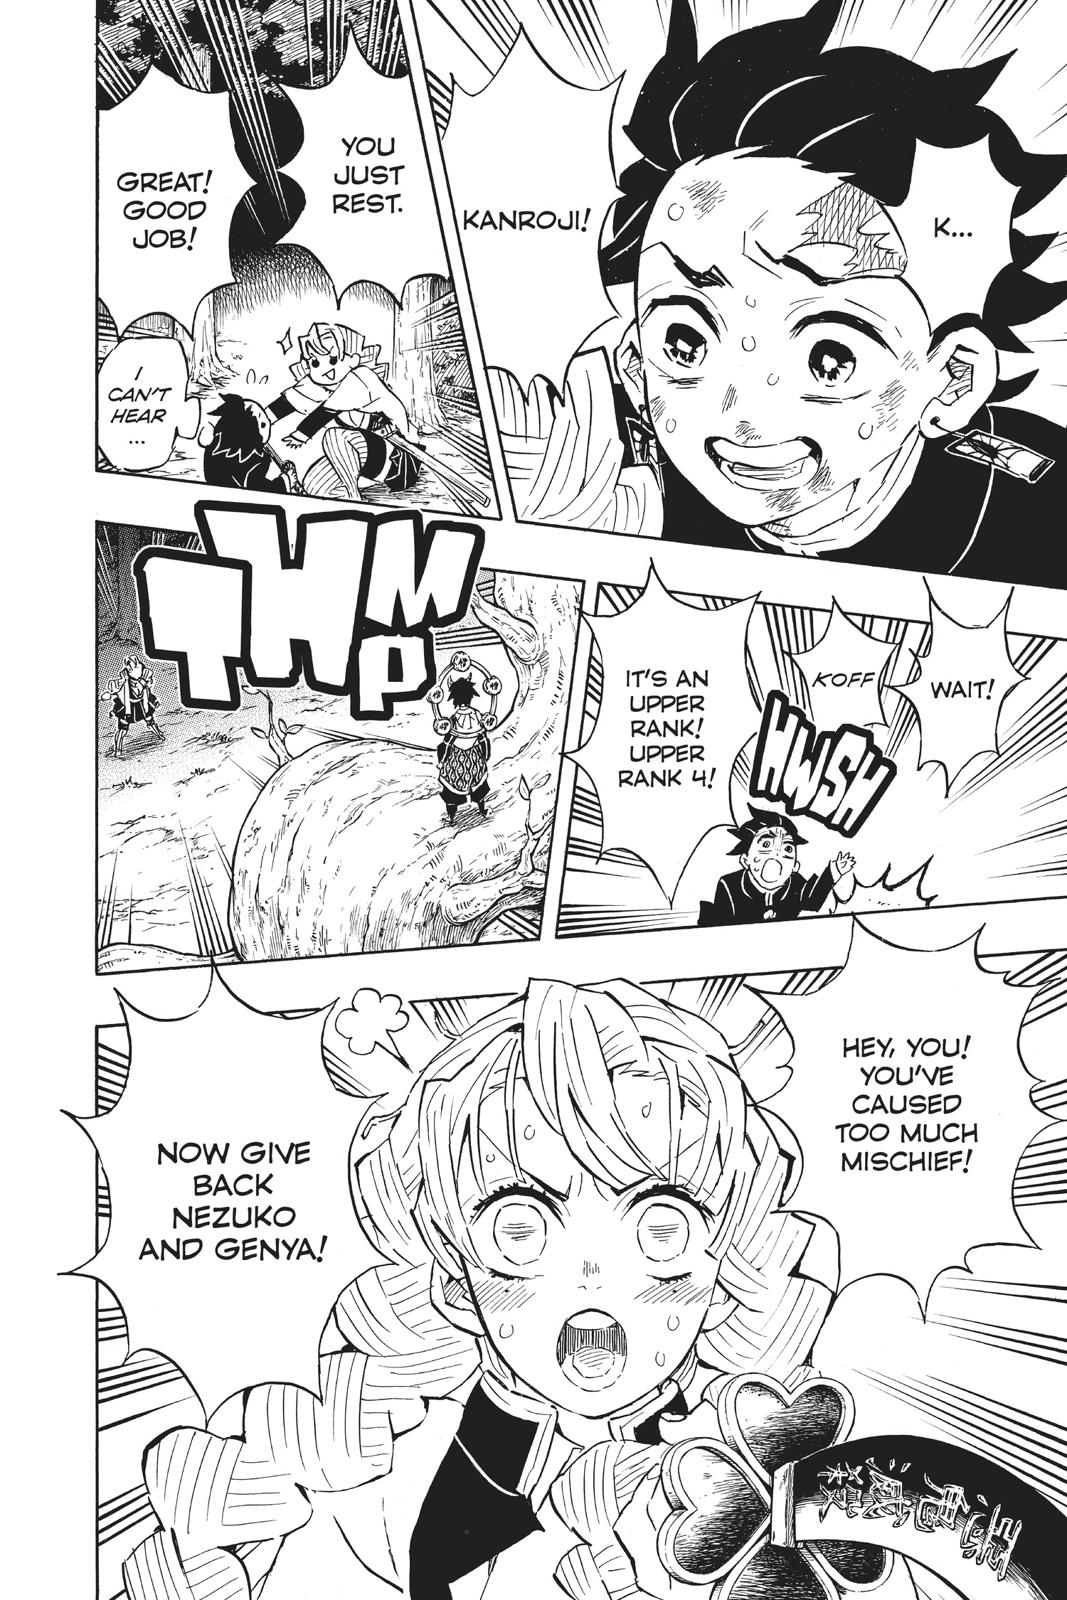 Demon Slayer Manga Manga Chapter - 122 - image 11